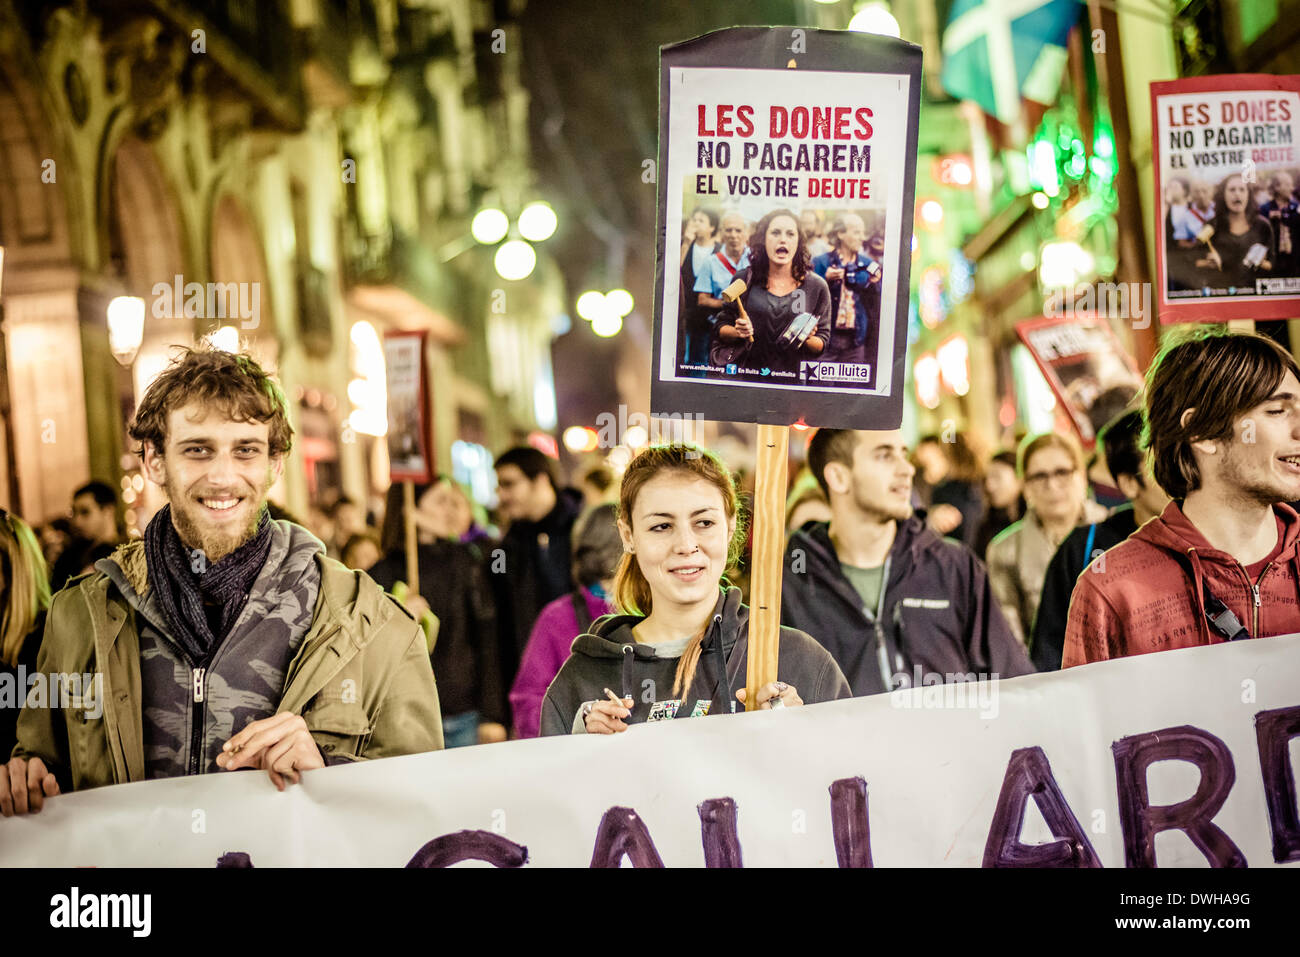 Barcelone, Espagne. 8 mars 2014 : Activists holding pancartes derrière leur bannière mars à la ville de Barcelone sur la Journée internationale de la femme : Crédit matthi/Alamy Live News Banque D'Images